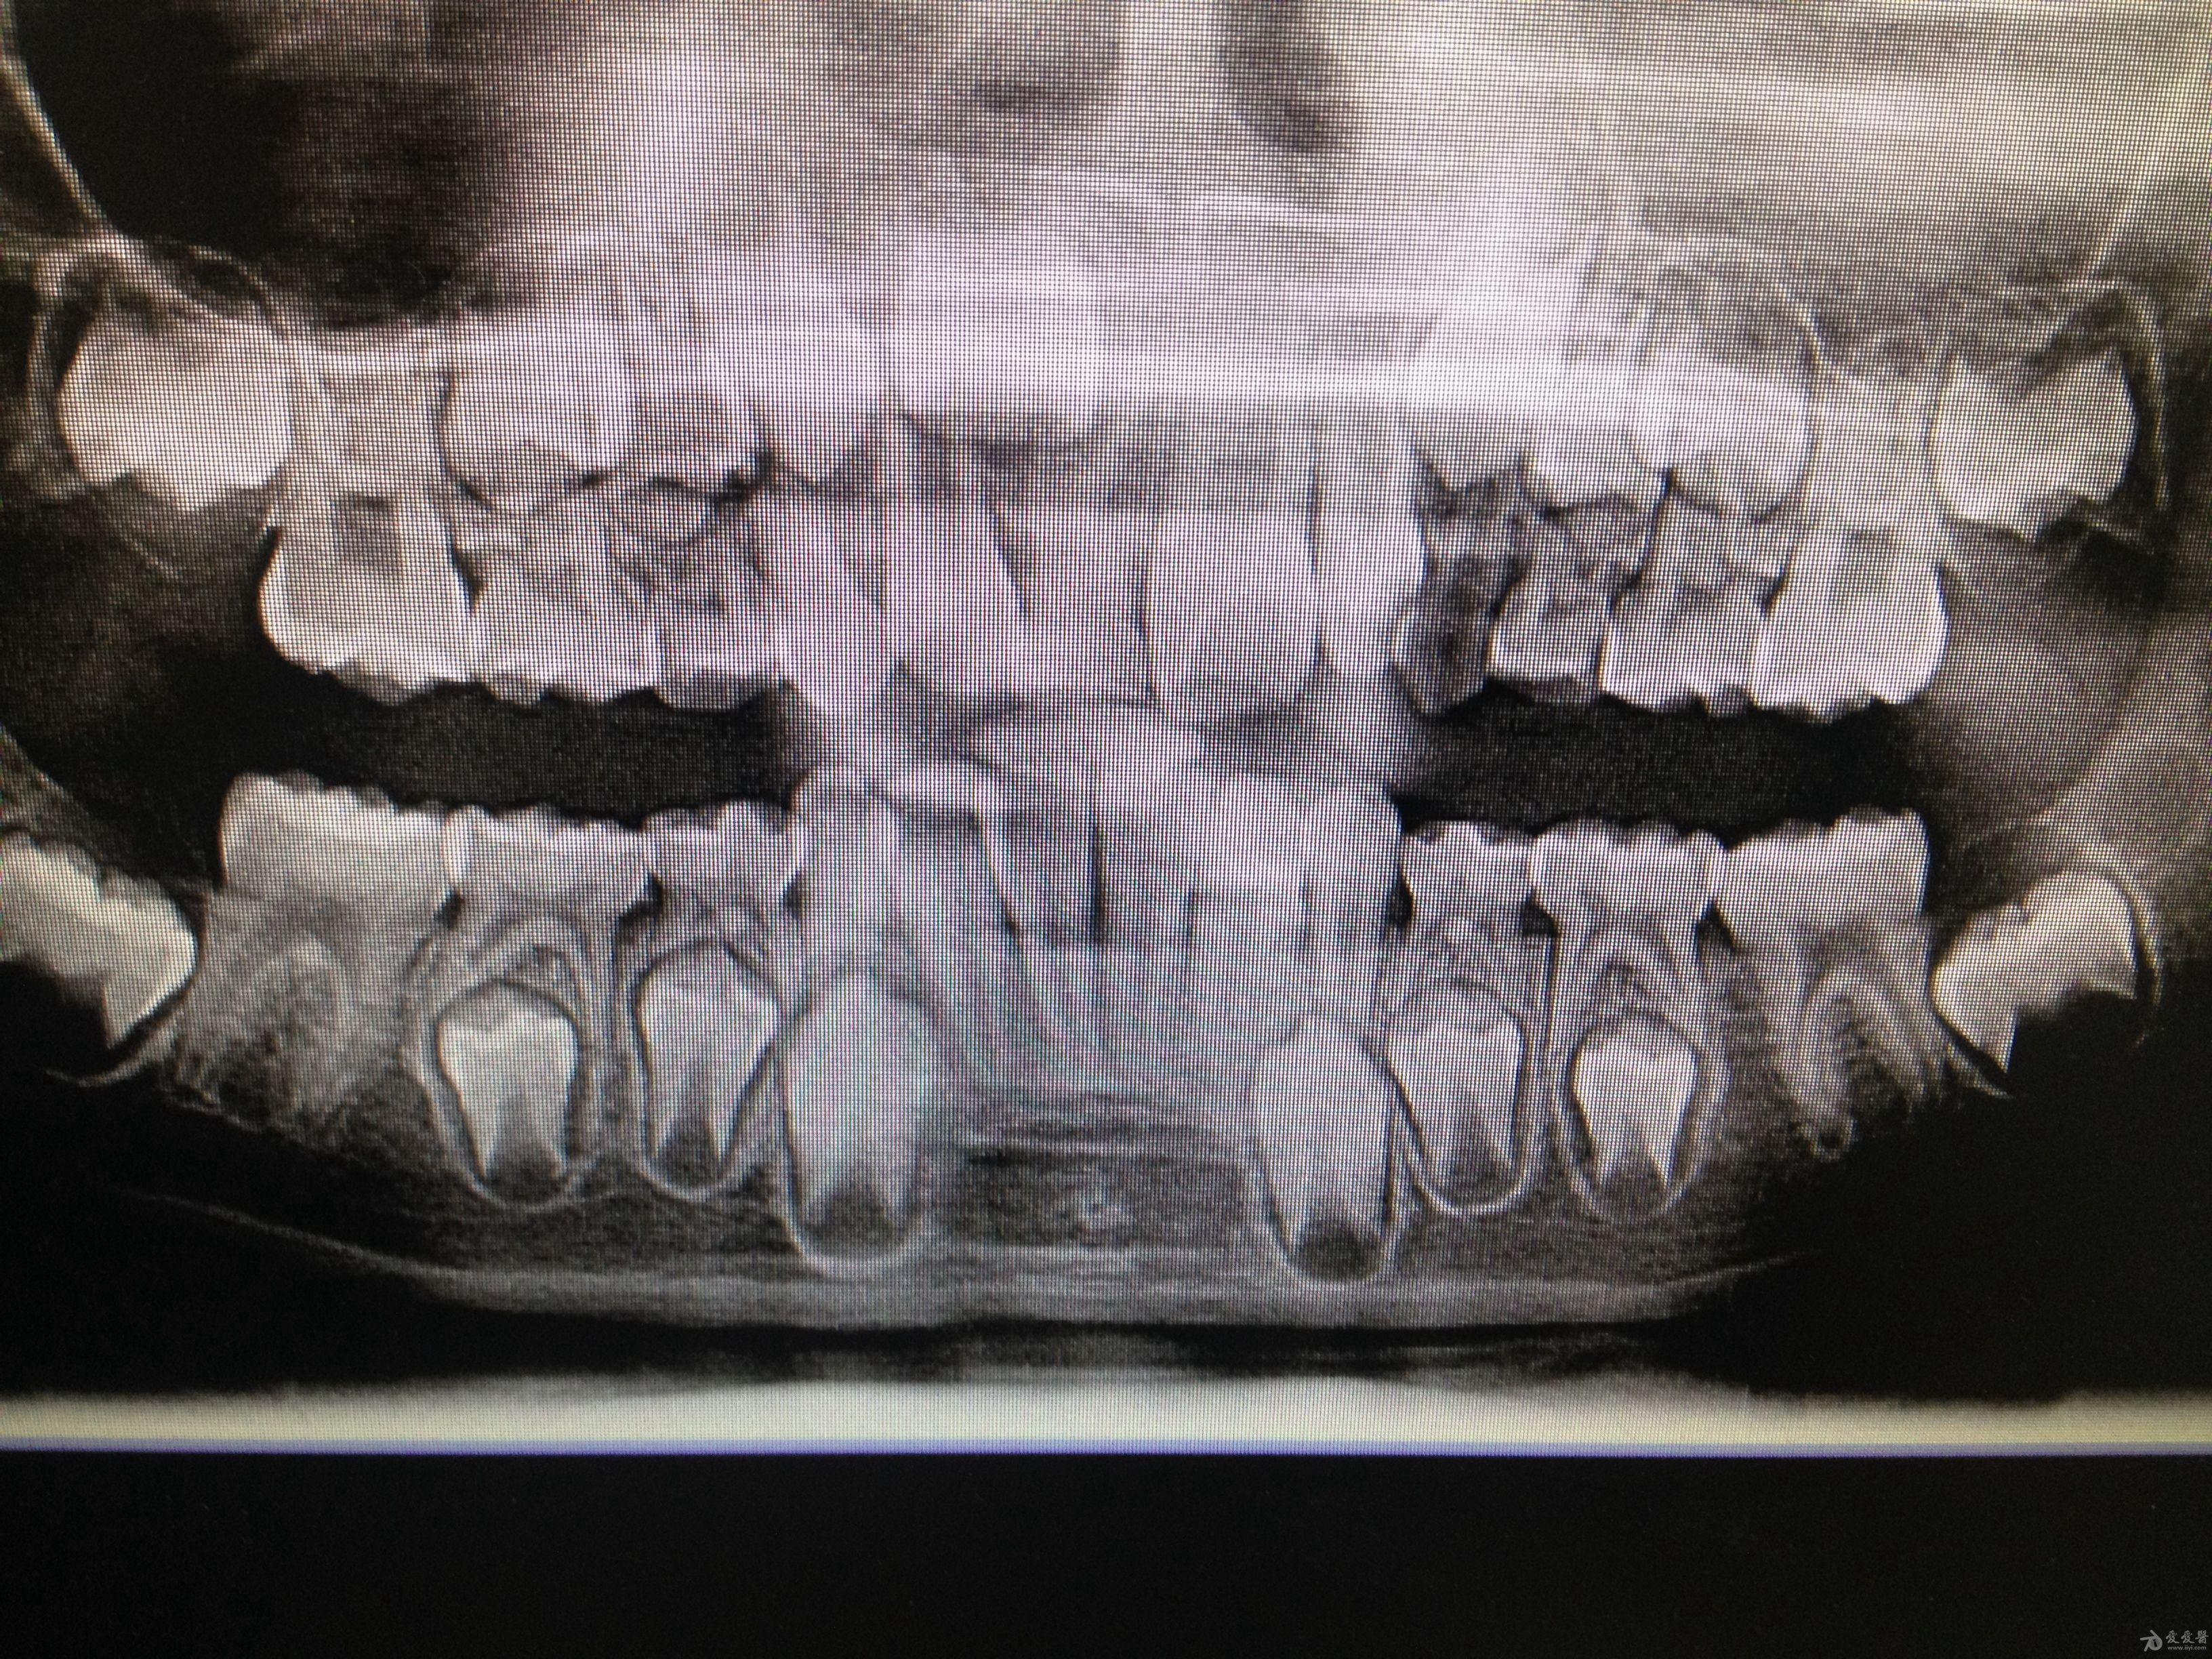 乳牙和恒牙x光图图片